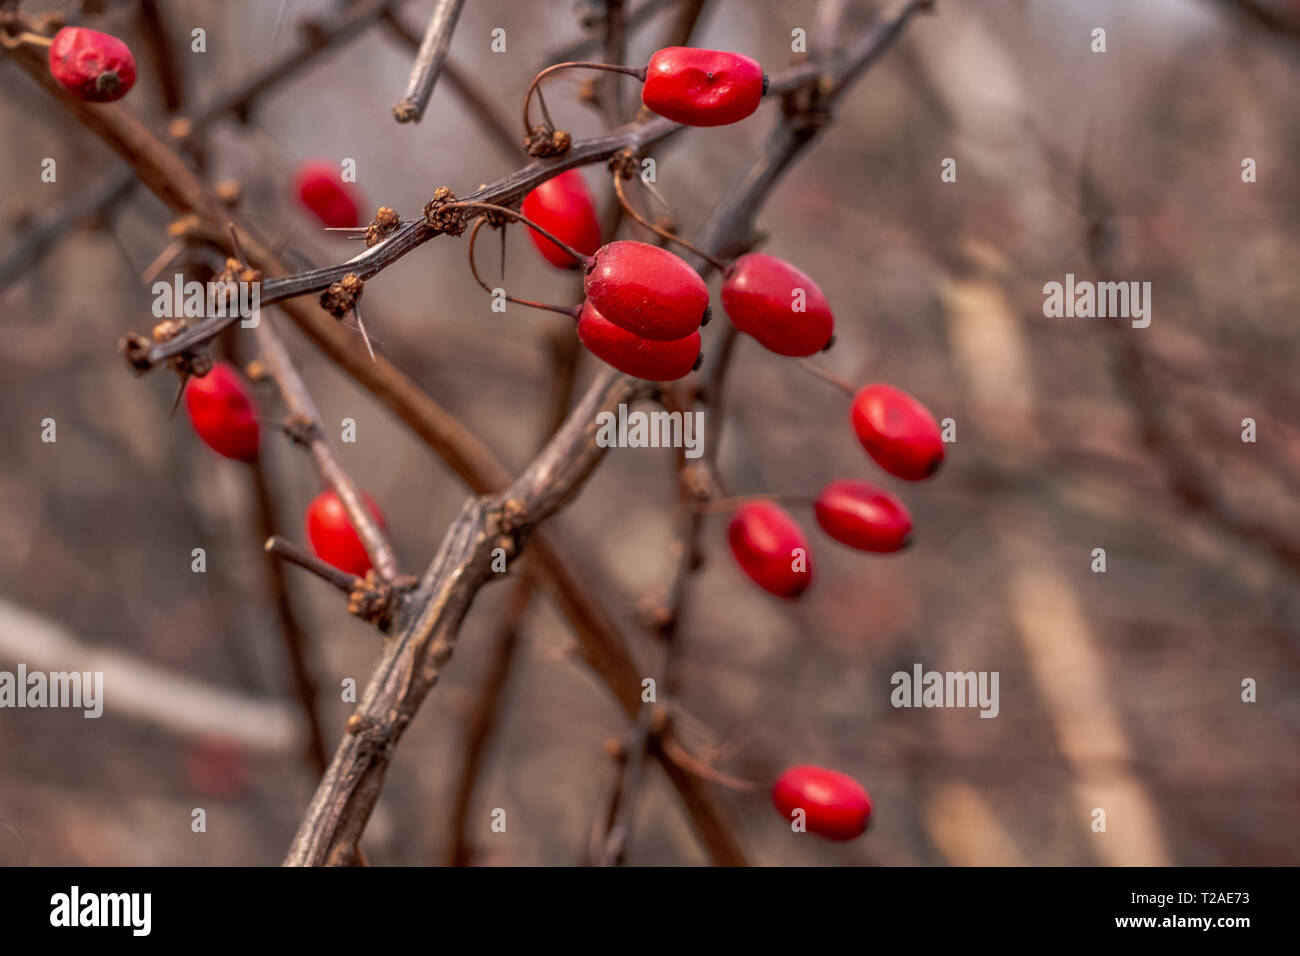 Baies comestibles rouge du célèbre arbuste de l'épine-vinette du Japon sur le figuier de branches d'épines dans la forêt d'hiver. Banque D'Images